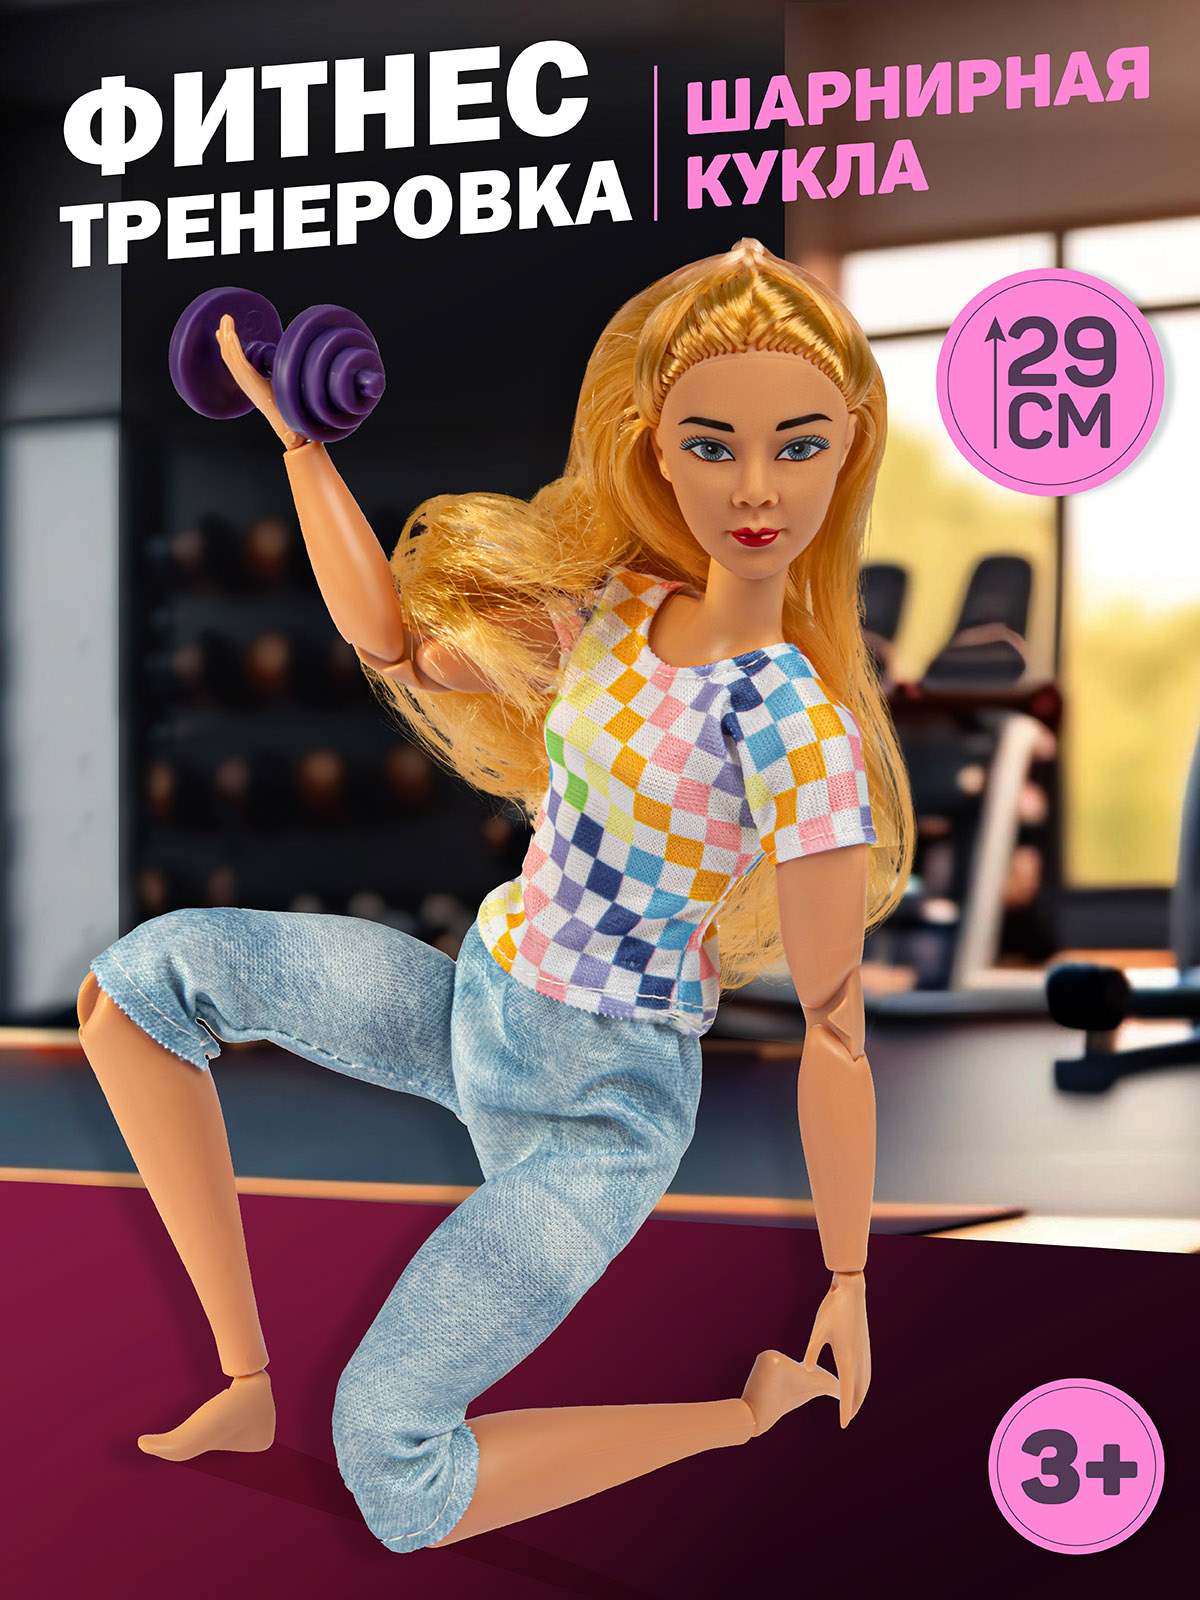 Кукла Amore Bello в спортивном зале, здоровый образ жизни, аксессуары, JB0211558